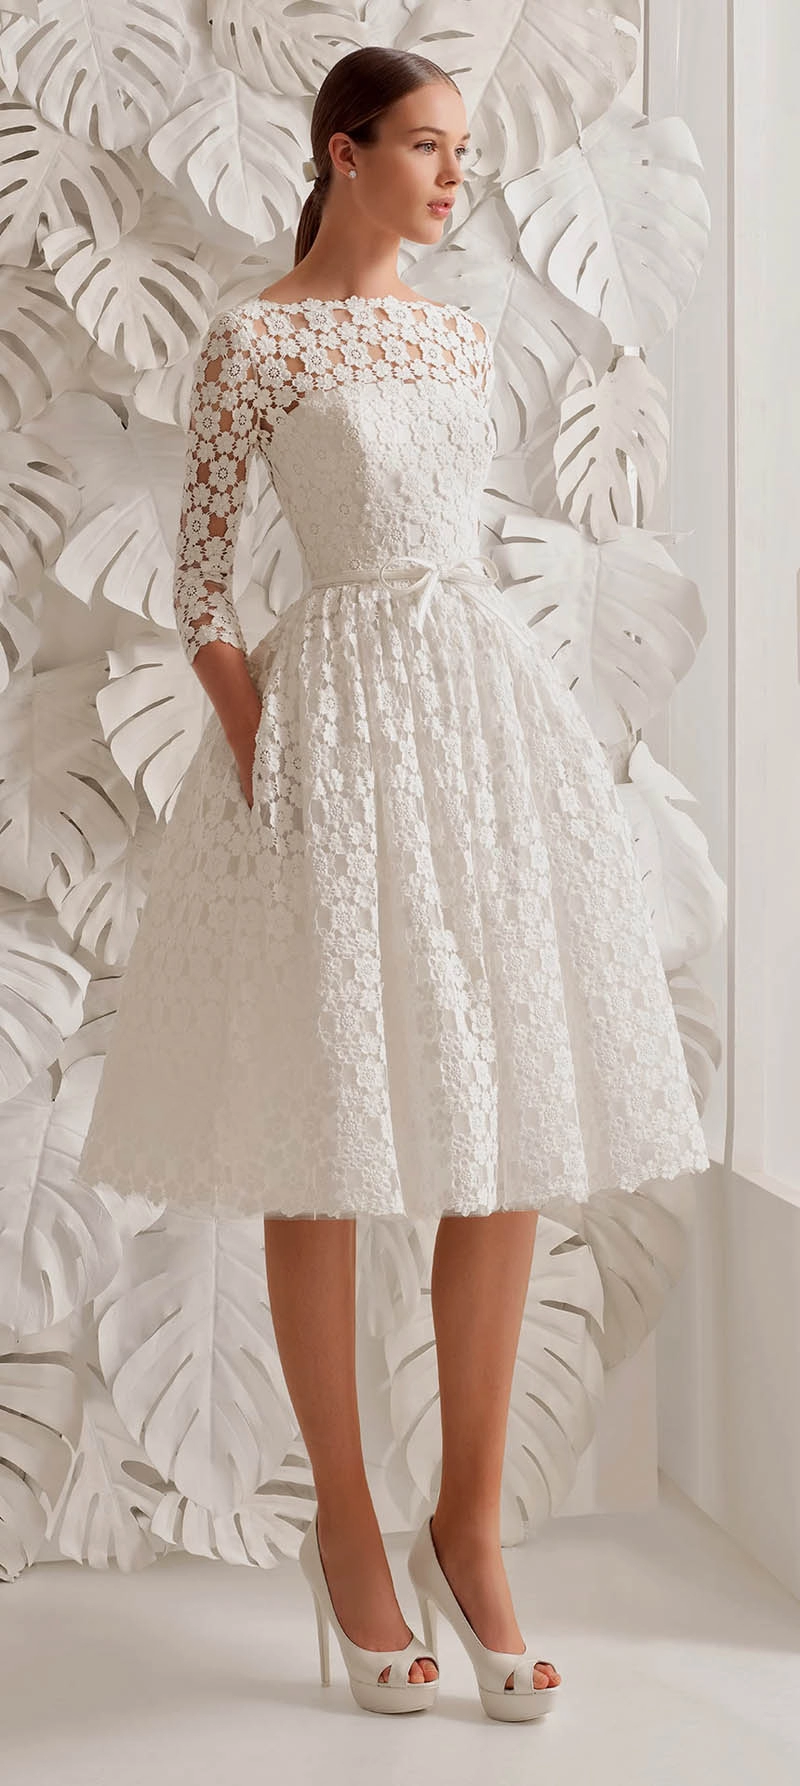 Váy cưới ngắn được yêu thích đặc biệt vì chẳng nặng cũng không bẩn vì mưa